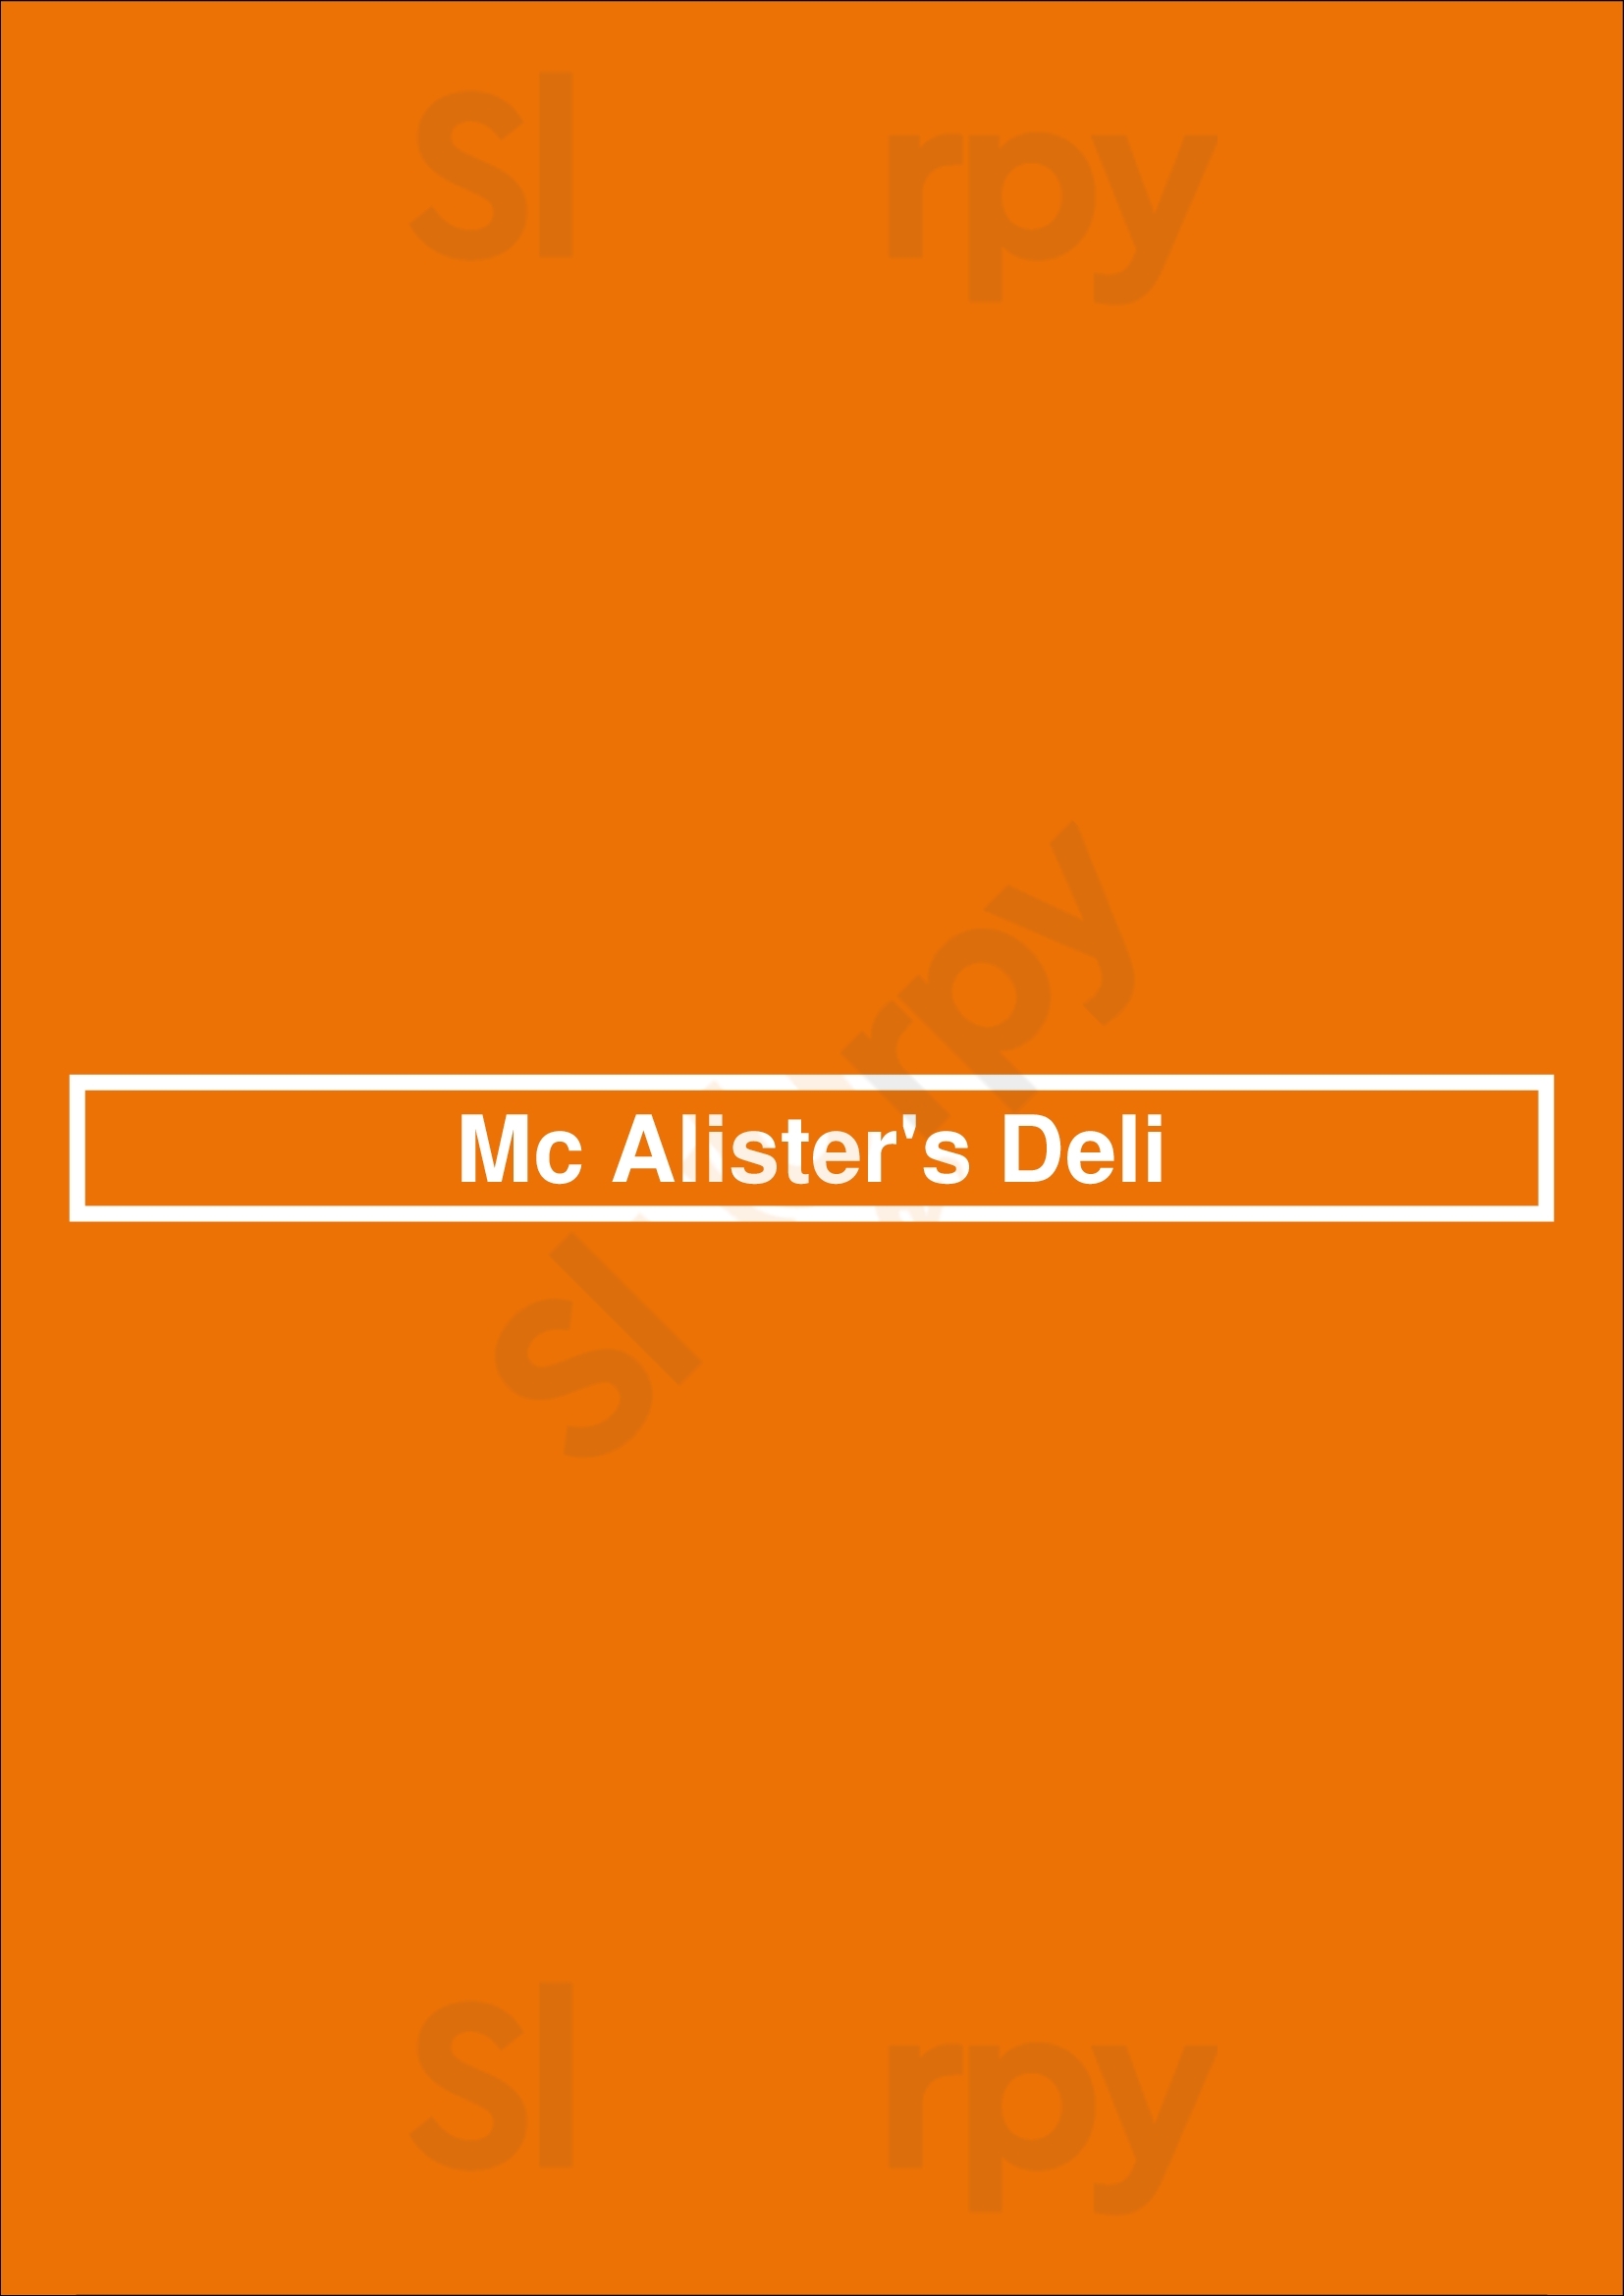 Mcalister's Deli Lafayette Menu - 1